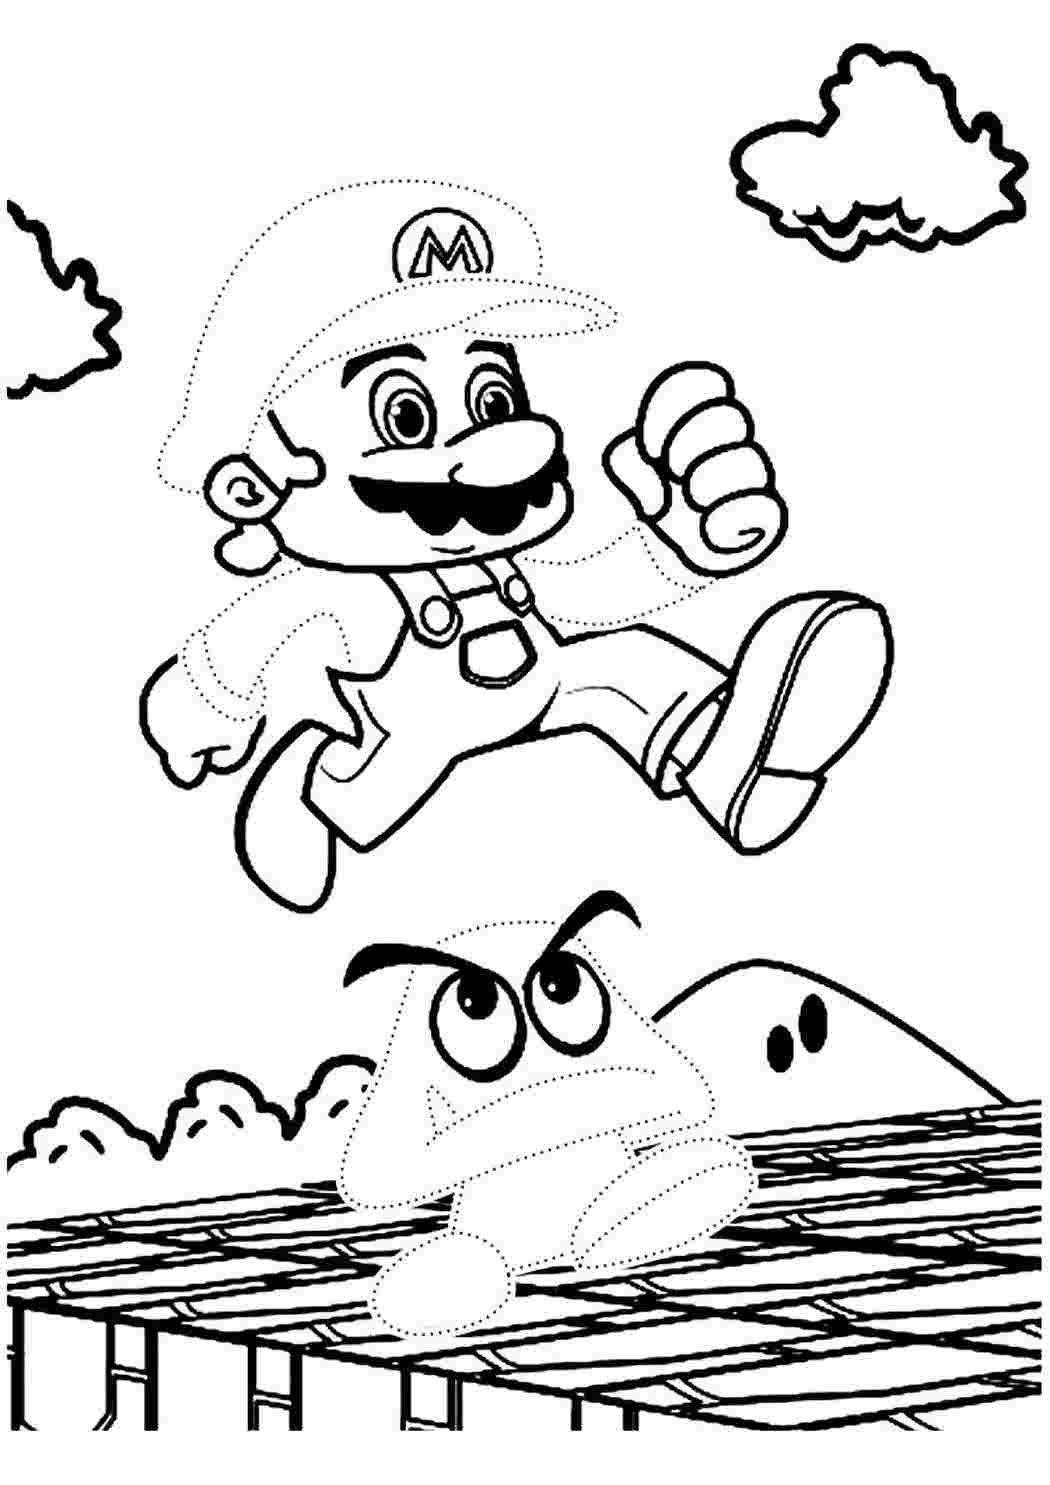 Супер Марио раскраска для детей